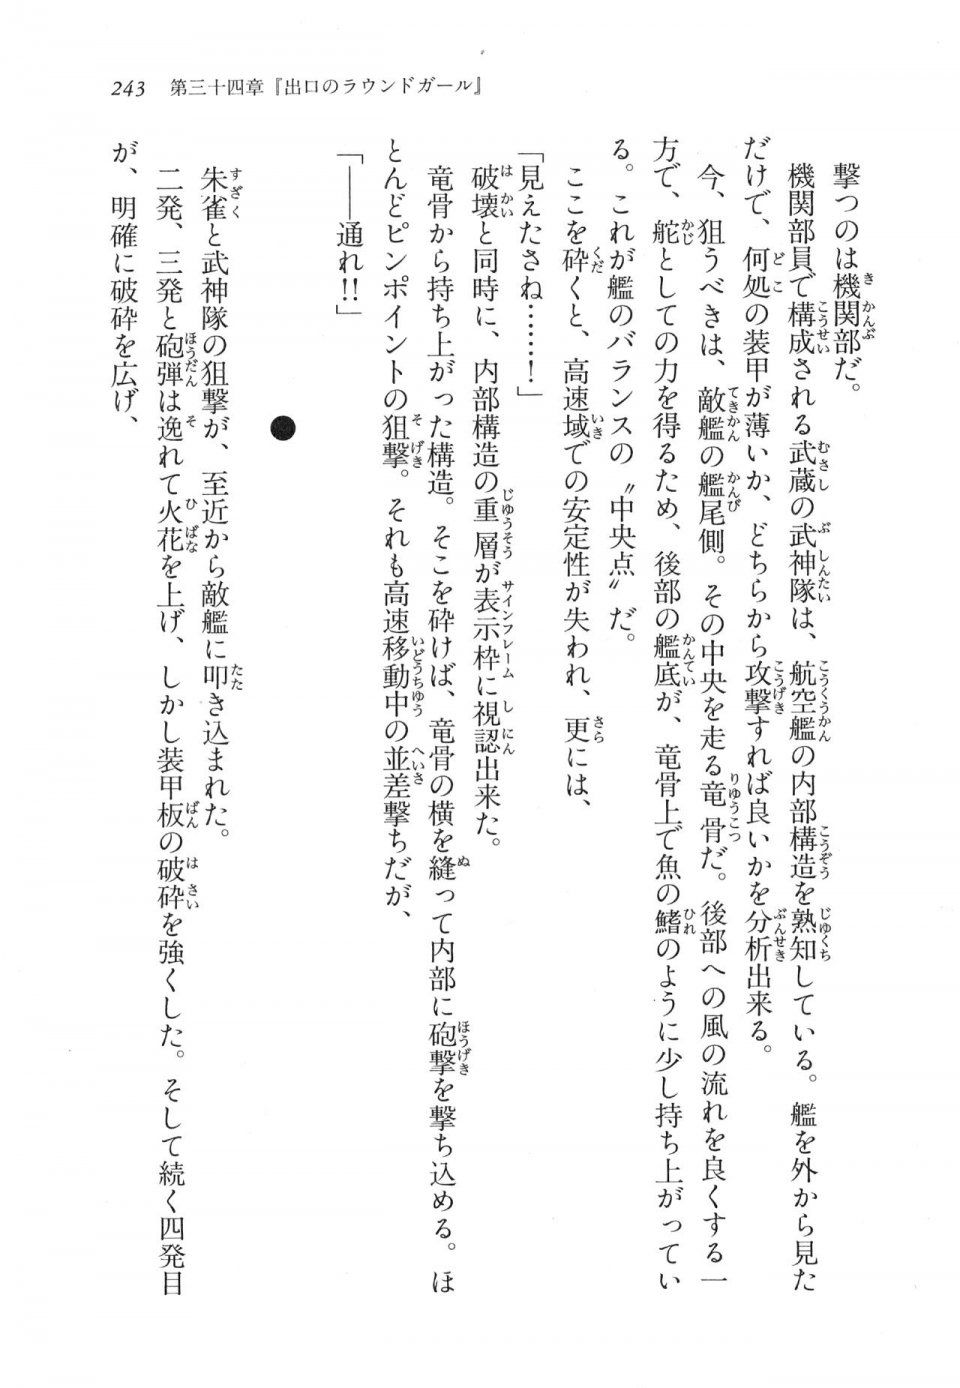 Kyoukai Senjou no Horizon LN Vol 17(7B) - Photo #243